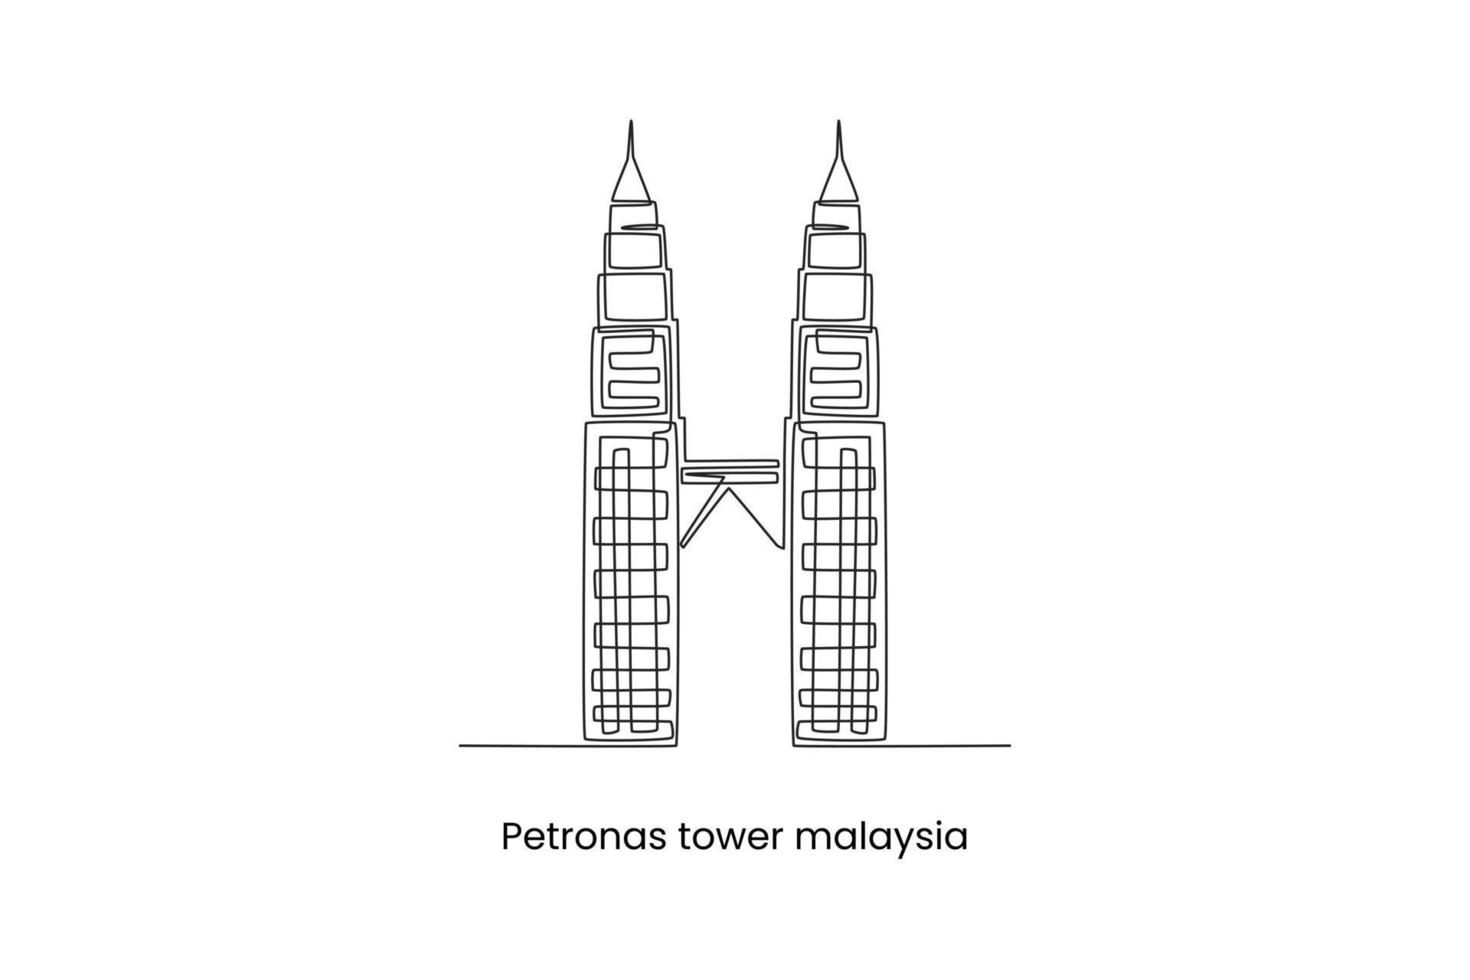 kuala lumpur, malaysia - 24. august 2022 fortlaufende einlinienzeichnung petronas twin towers in kuala lumpur malaysia. Landmarken-Konzept. einzeiliges zeichnen design vektorgrafik illustration. vektor